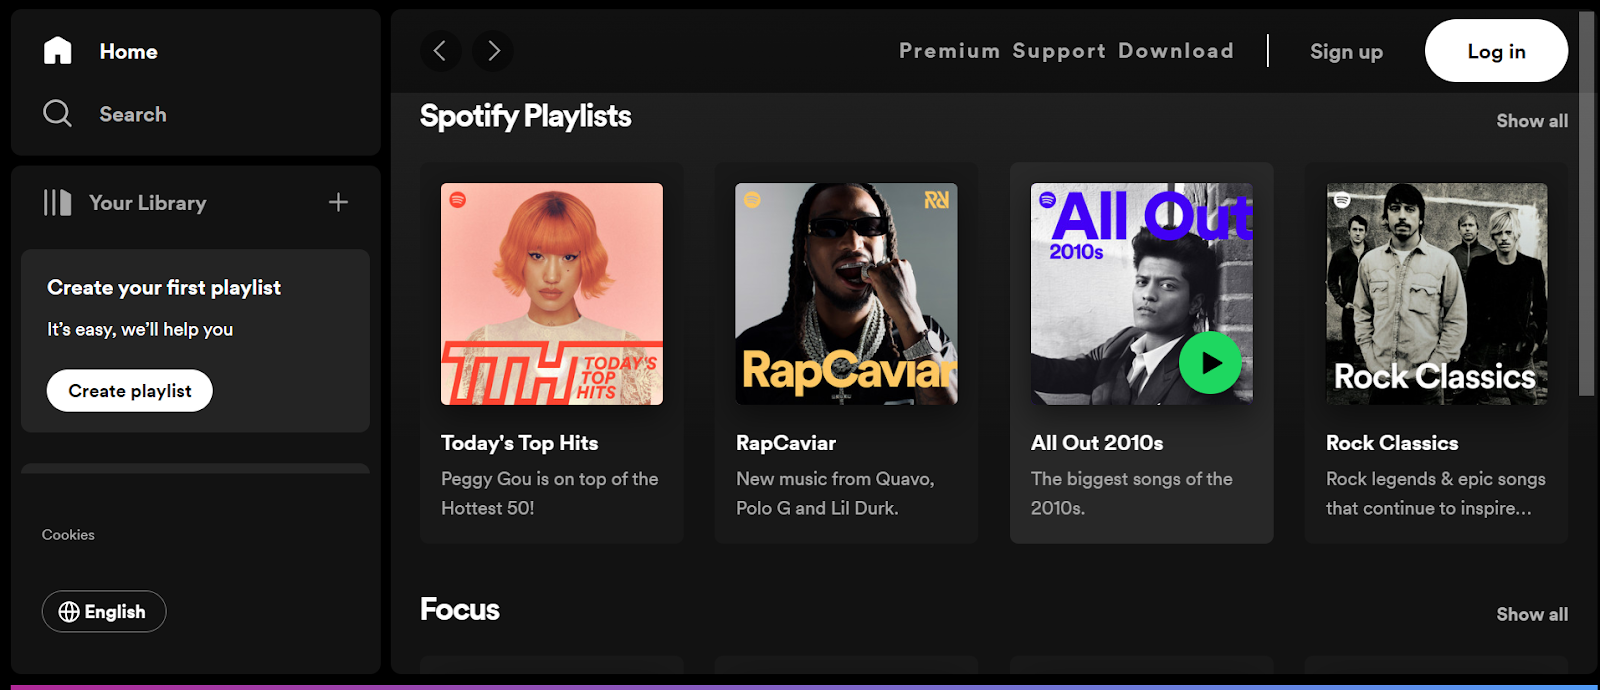 A screenshot of Spotify's website